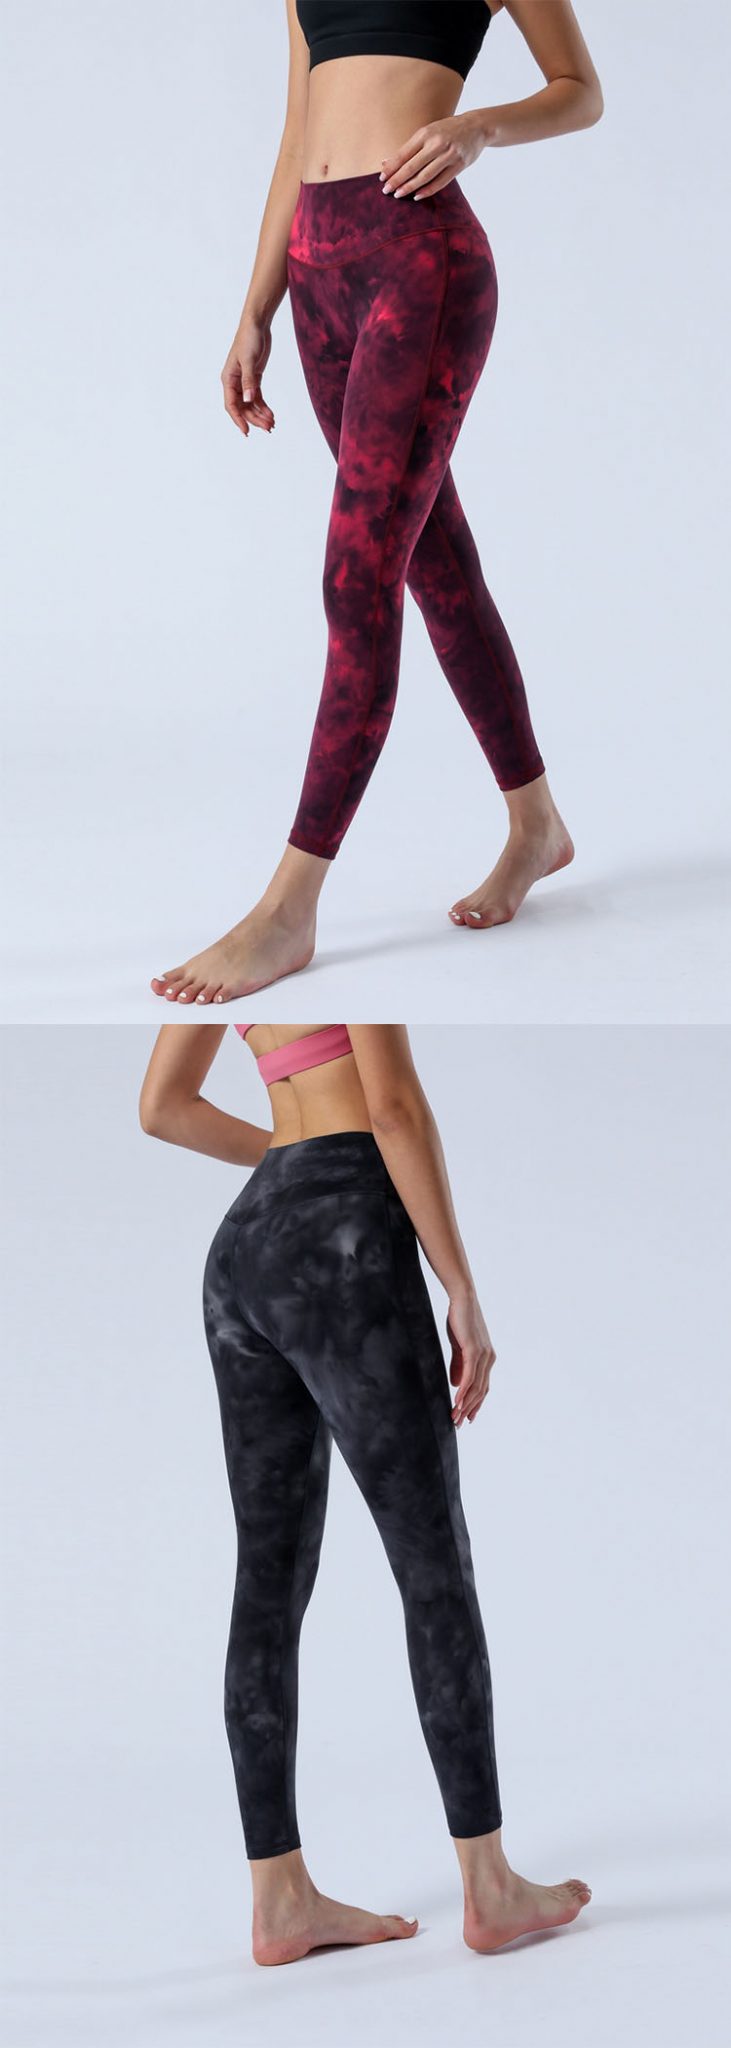 Tie Dye Leggings for Women High Waisted No Front Seam Yoga Legging